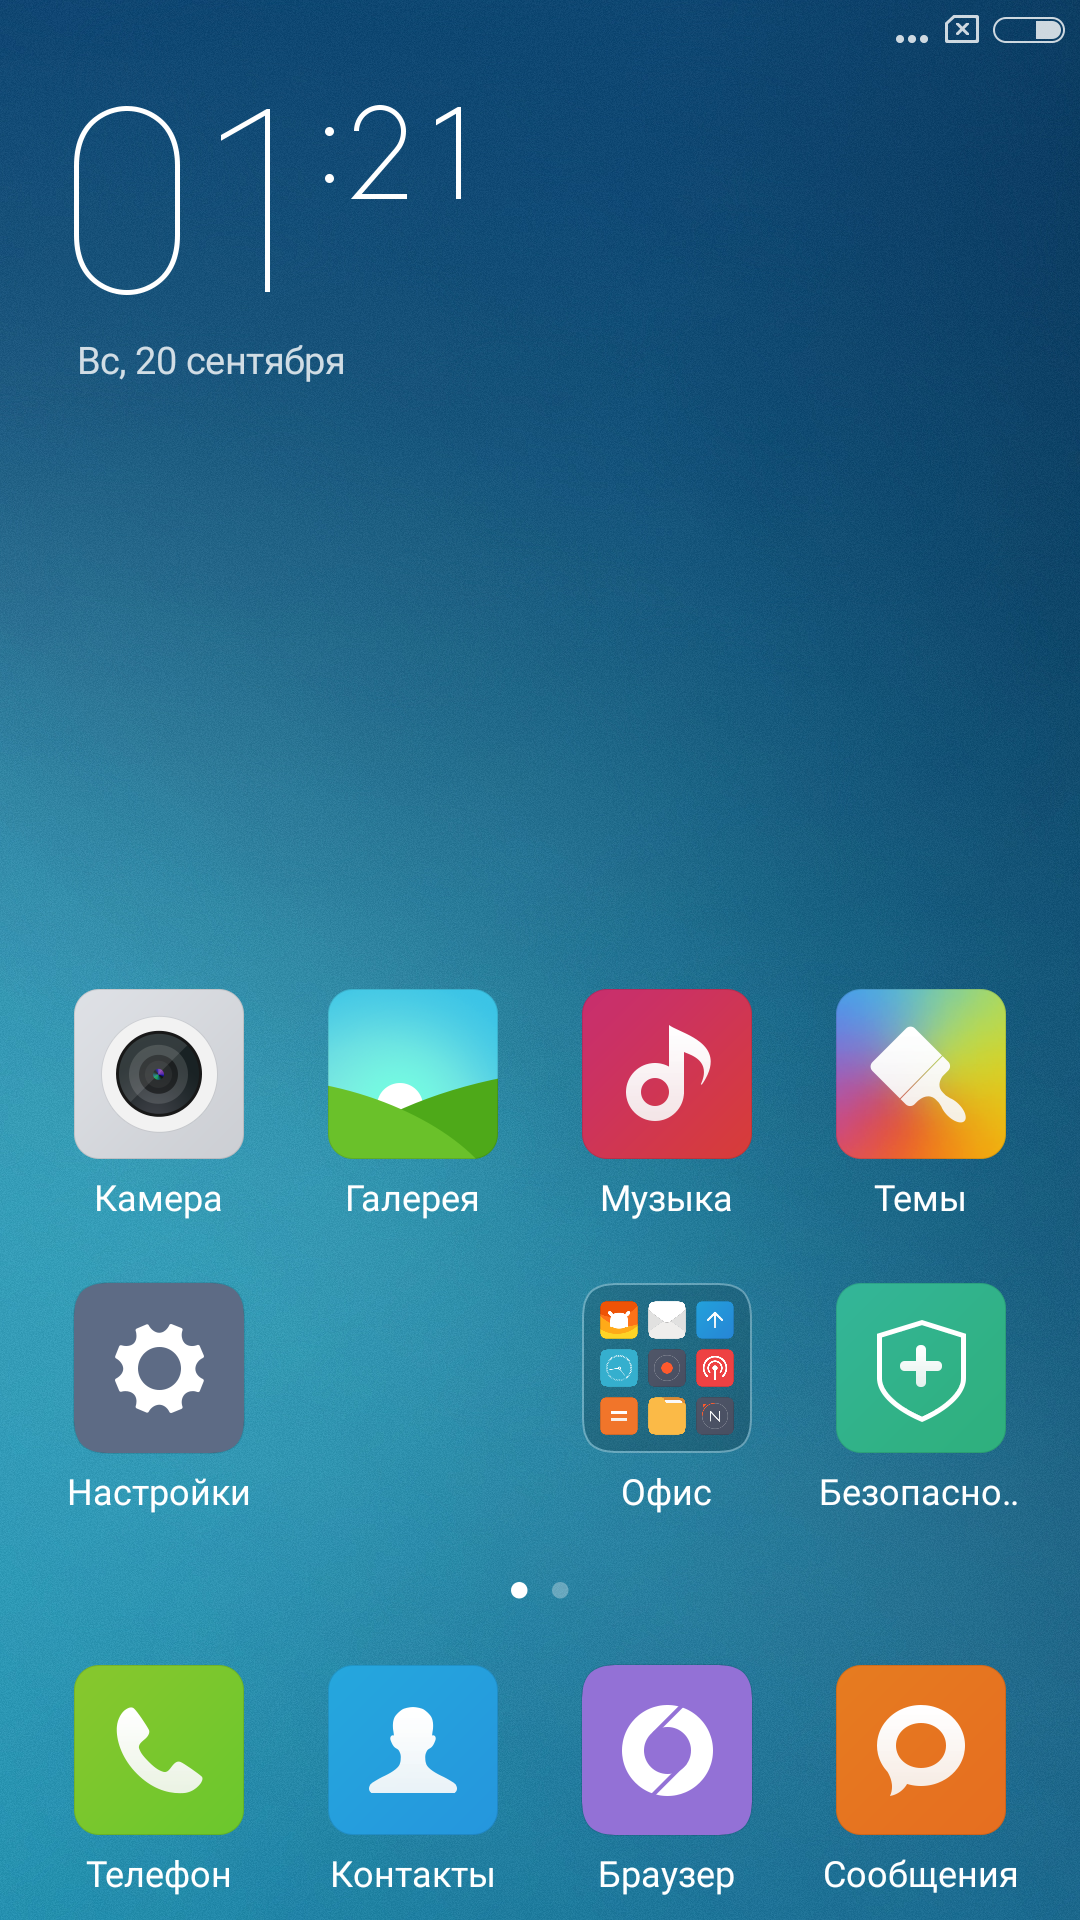 Обзор лучшего бюджетника 2015 года — Xiaomi Redmi Note 2 - 20